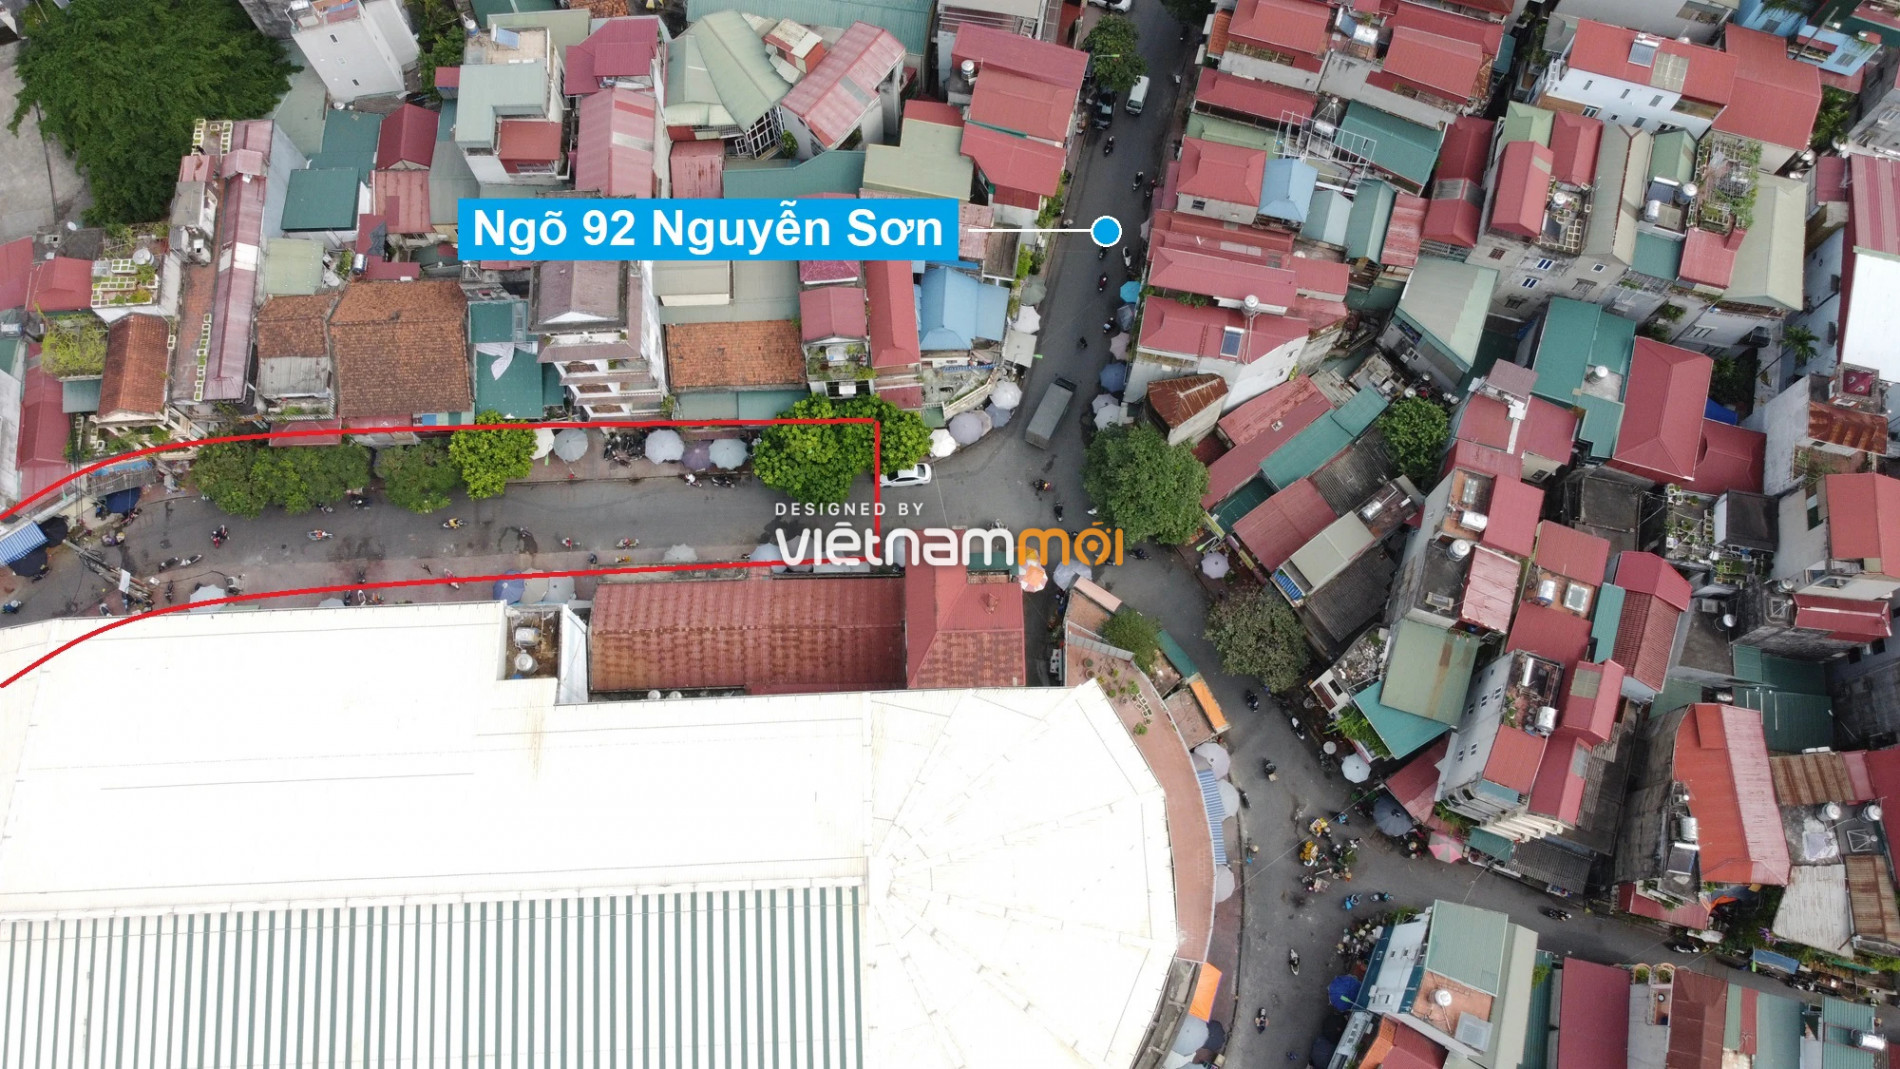 Những khu đất sắp thu hồi để mở đường ở phường Ngọc Lâm, Long Biên, Hà Nội (phần 4) - Ảnh 18.